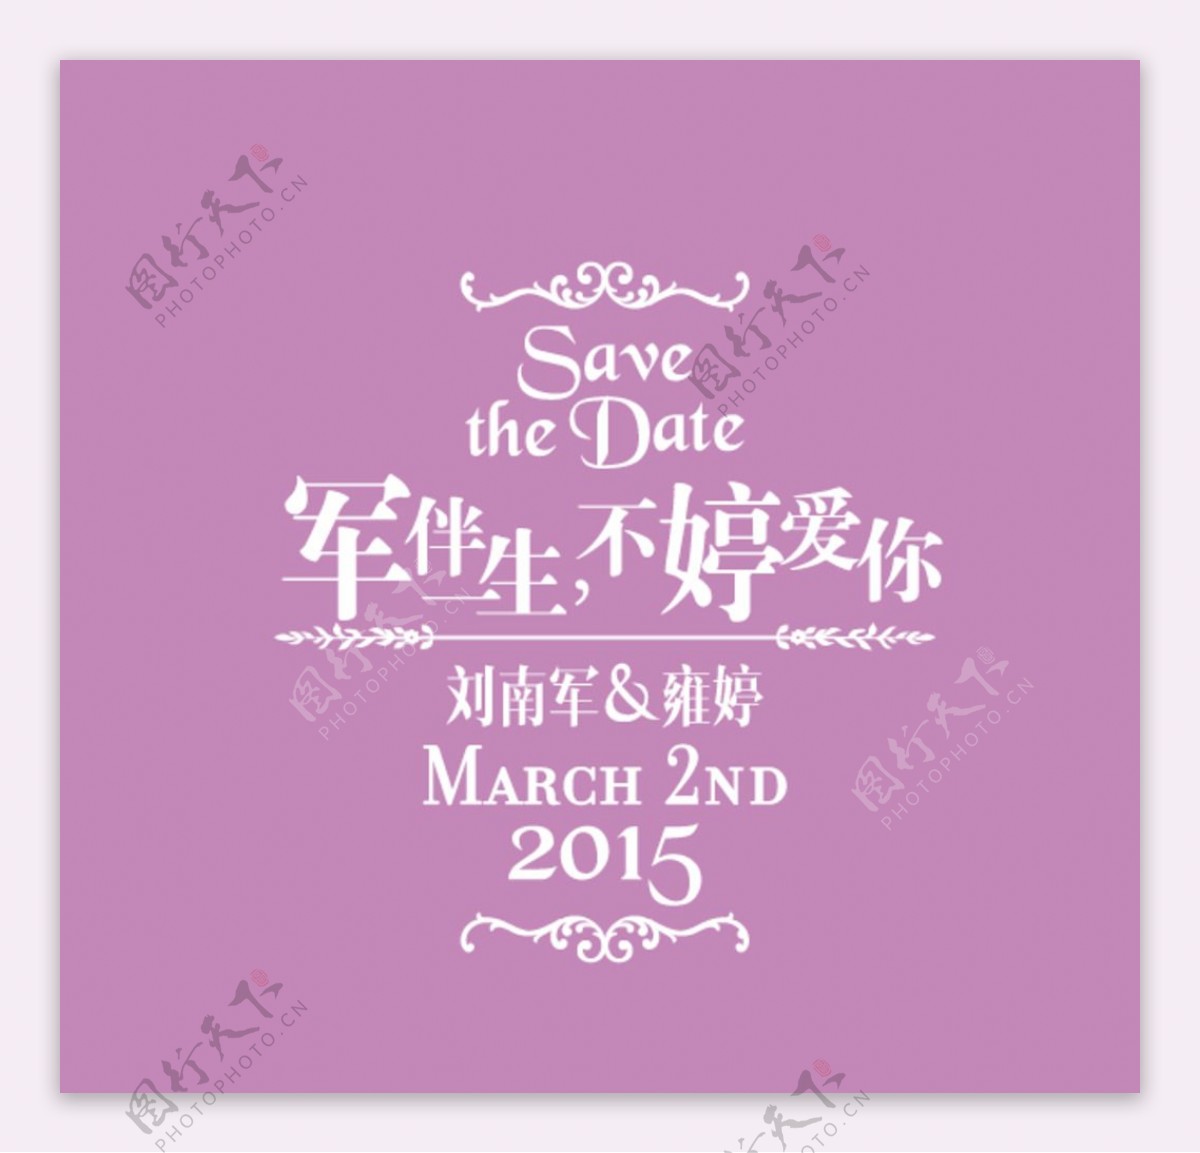 婚礼logo紫色婚礼标志